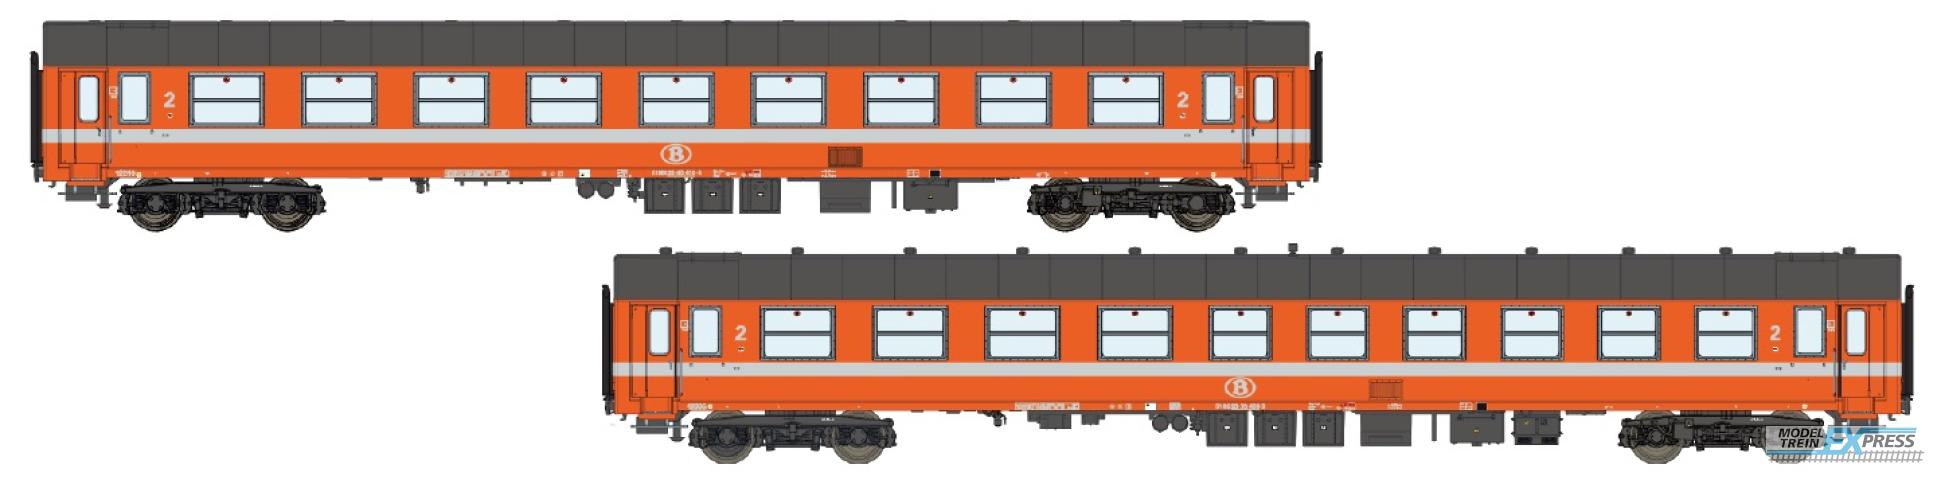 LS Models 42165 B9 ex-A9 + B10 ex-A4B6, oranje, witte lijn, grijs dak  /  Ep. IV  /  SNCB  /  HO  /  DC  /  2 P.